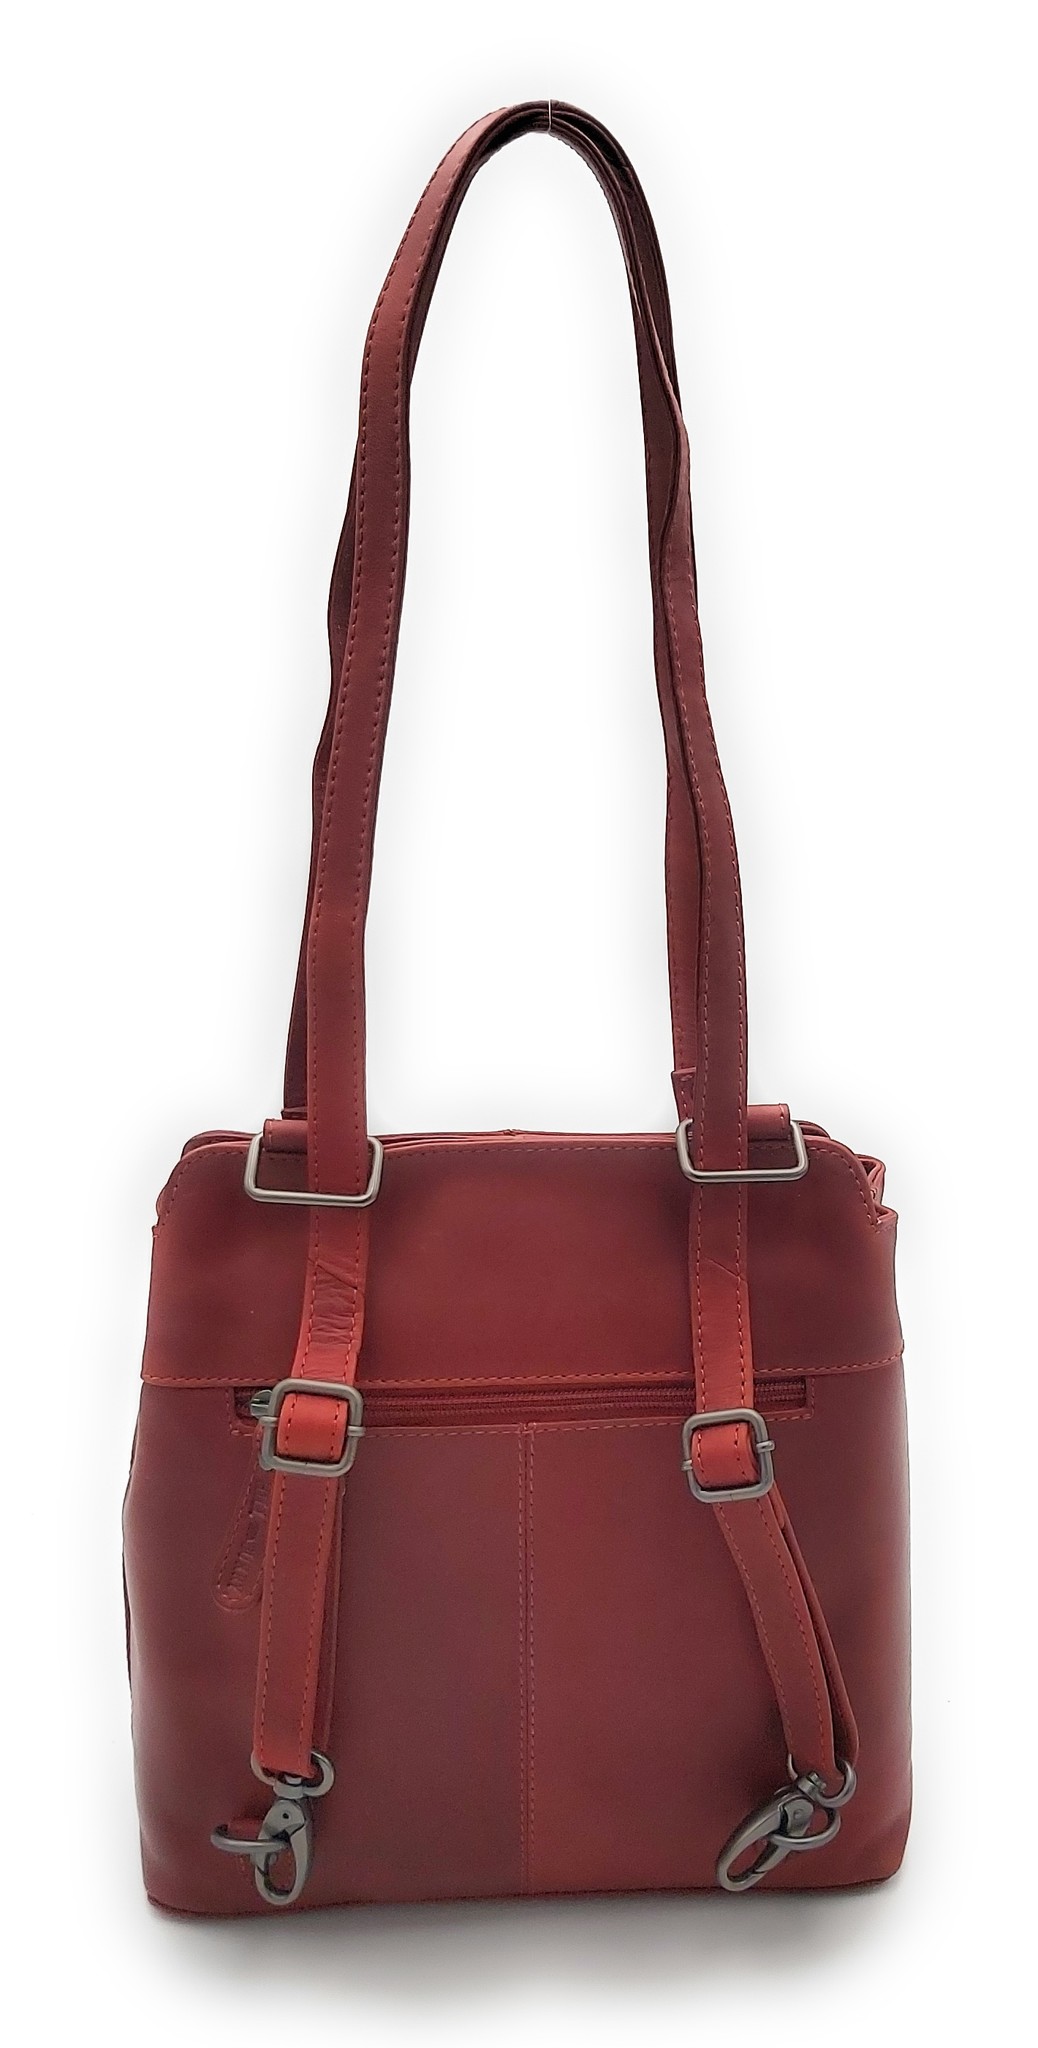 Hill Burry - VB100208 - 4065 - Echtes Leder - Damen Rucksack und Umhängetasche - Robust - Schick - Aussehen - Vintage Leder - Rot